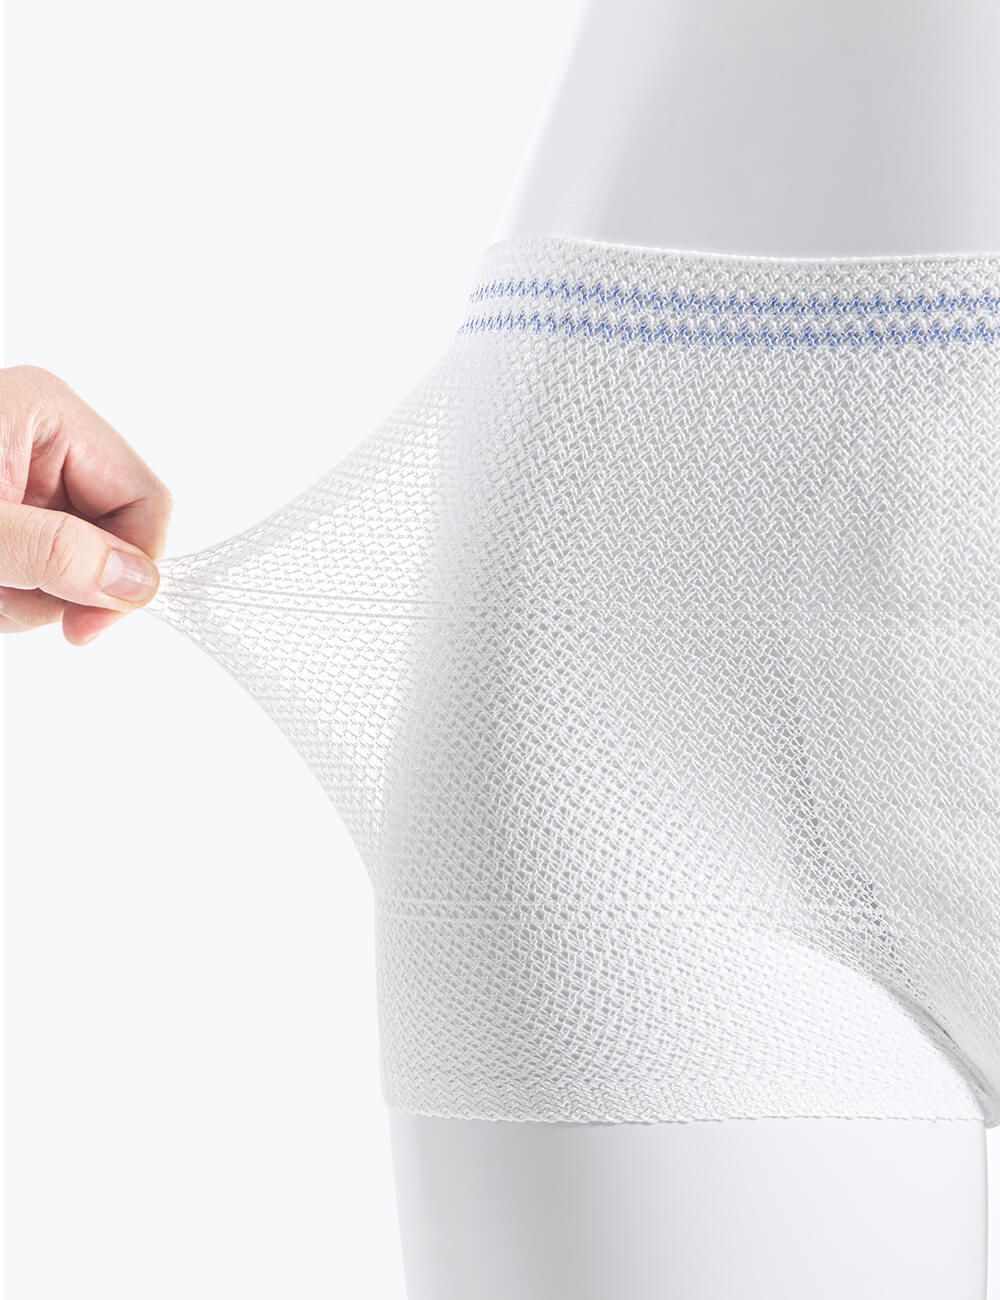 Disposable Cotton Underwear Women - Best Price in Singapore - Dec